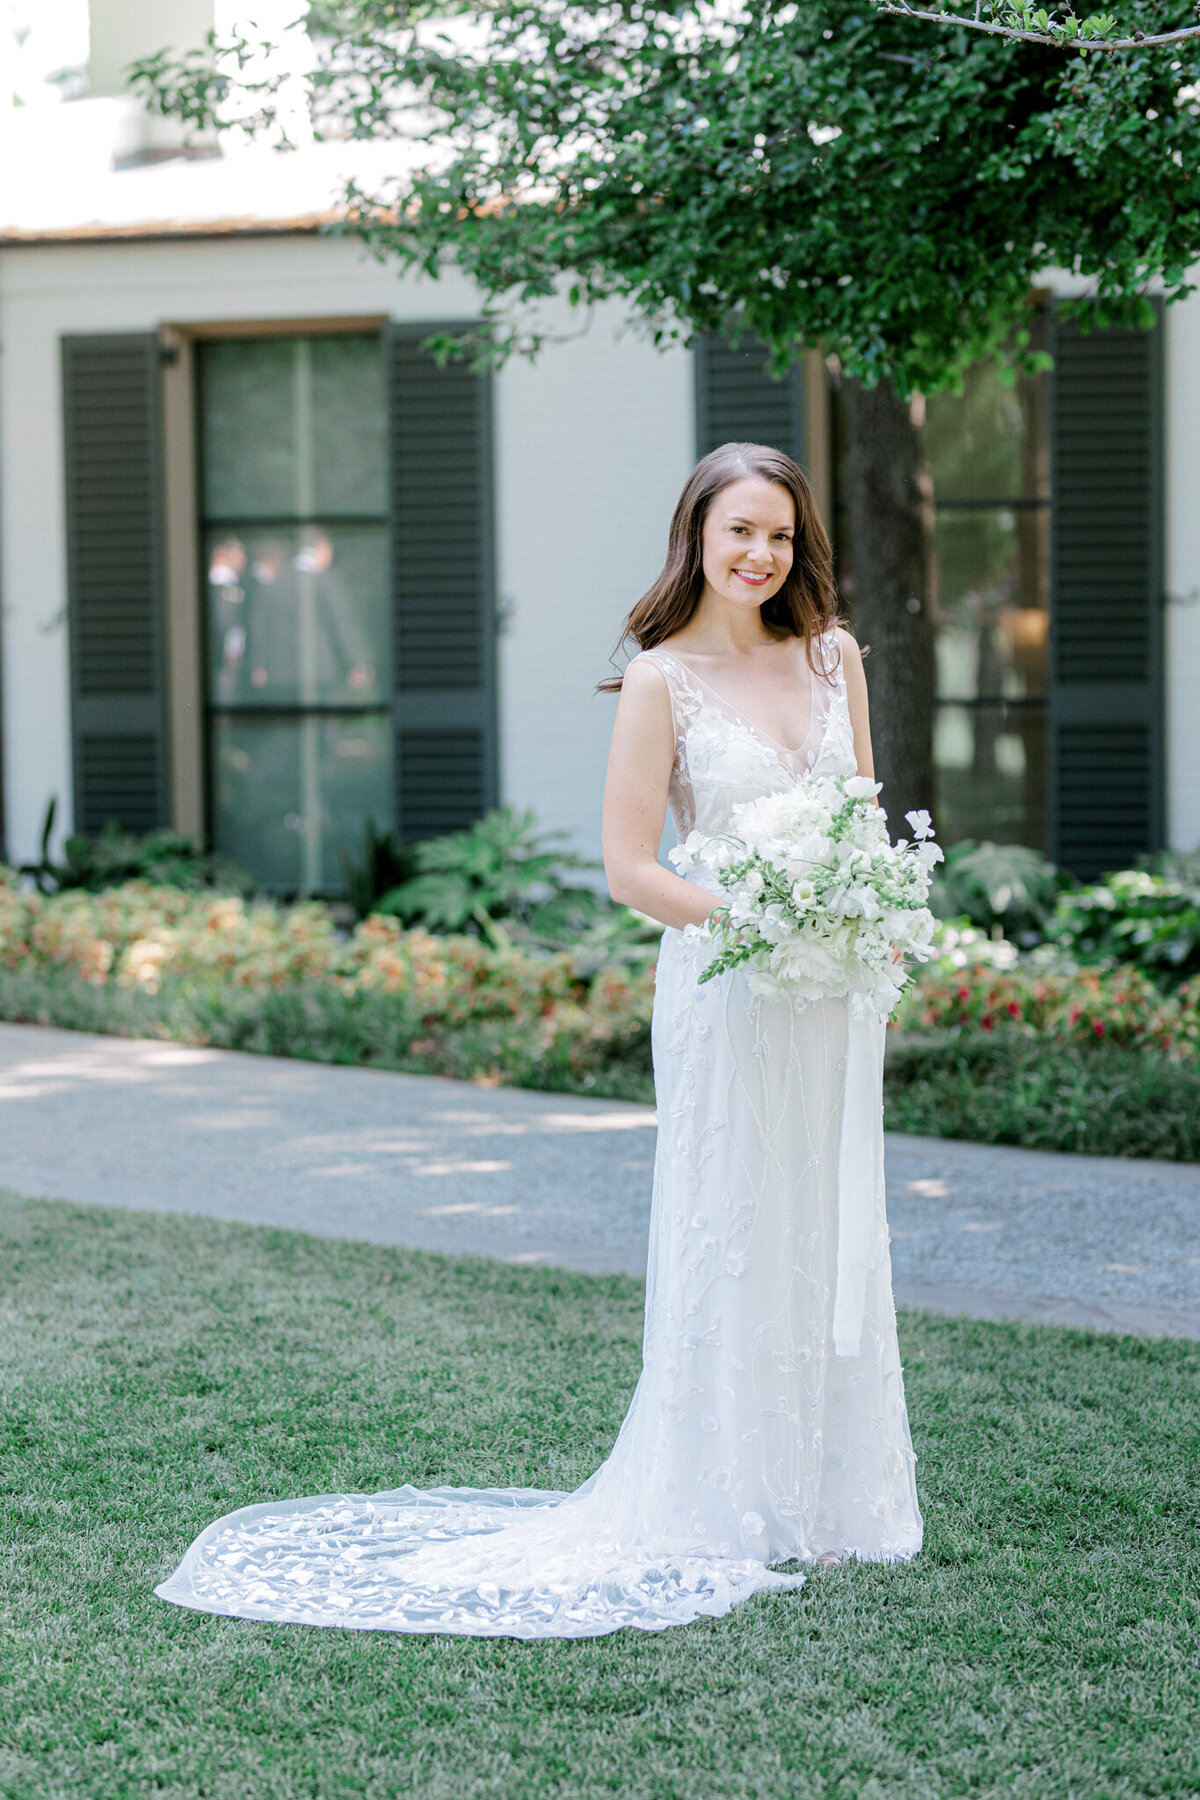 Gena & Matt's Wedding at the Dallas Arboretum | Dallas Wedding Photographer | Sami Kathryn Photography-15